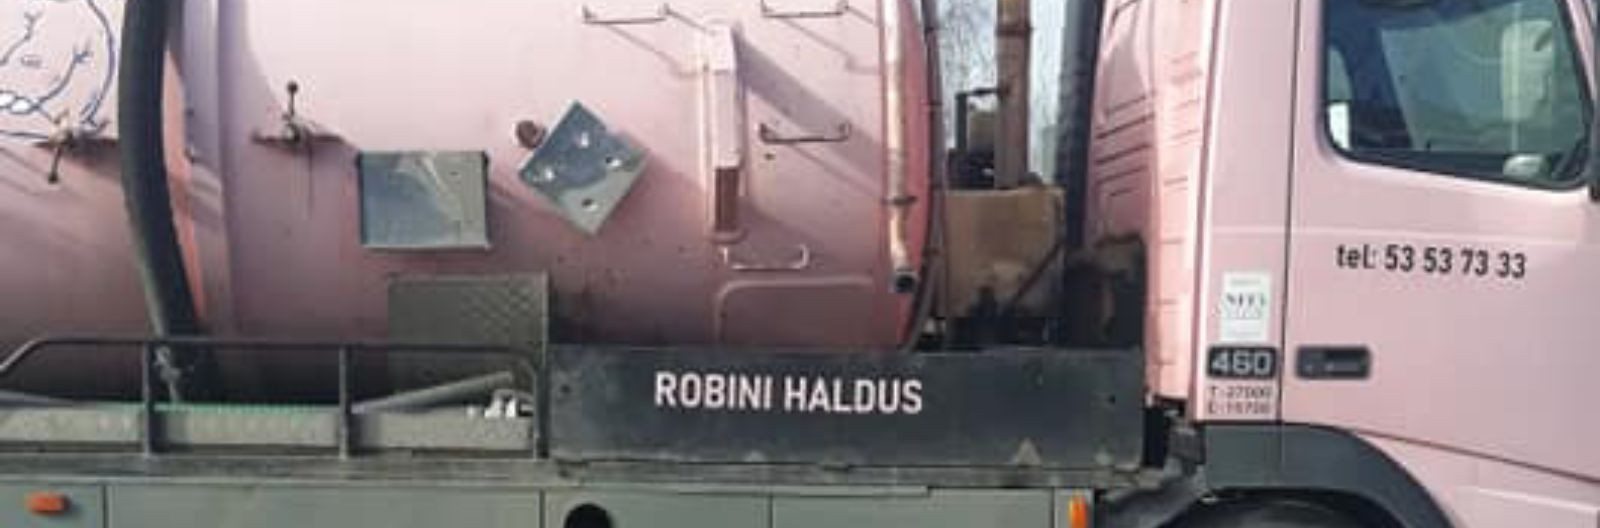 Robini Haldus OÜ on Lõuna-Eestis tegutsev ettevõte, mis pakub ...